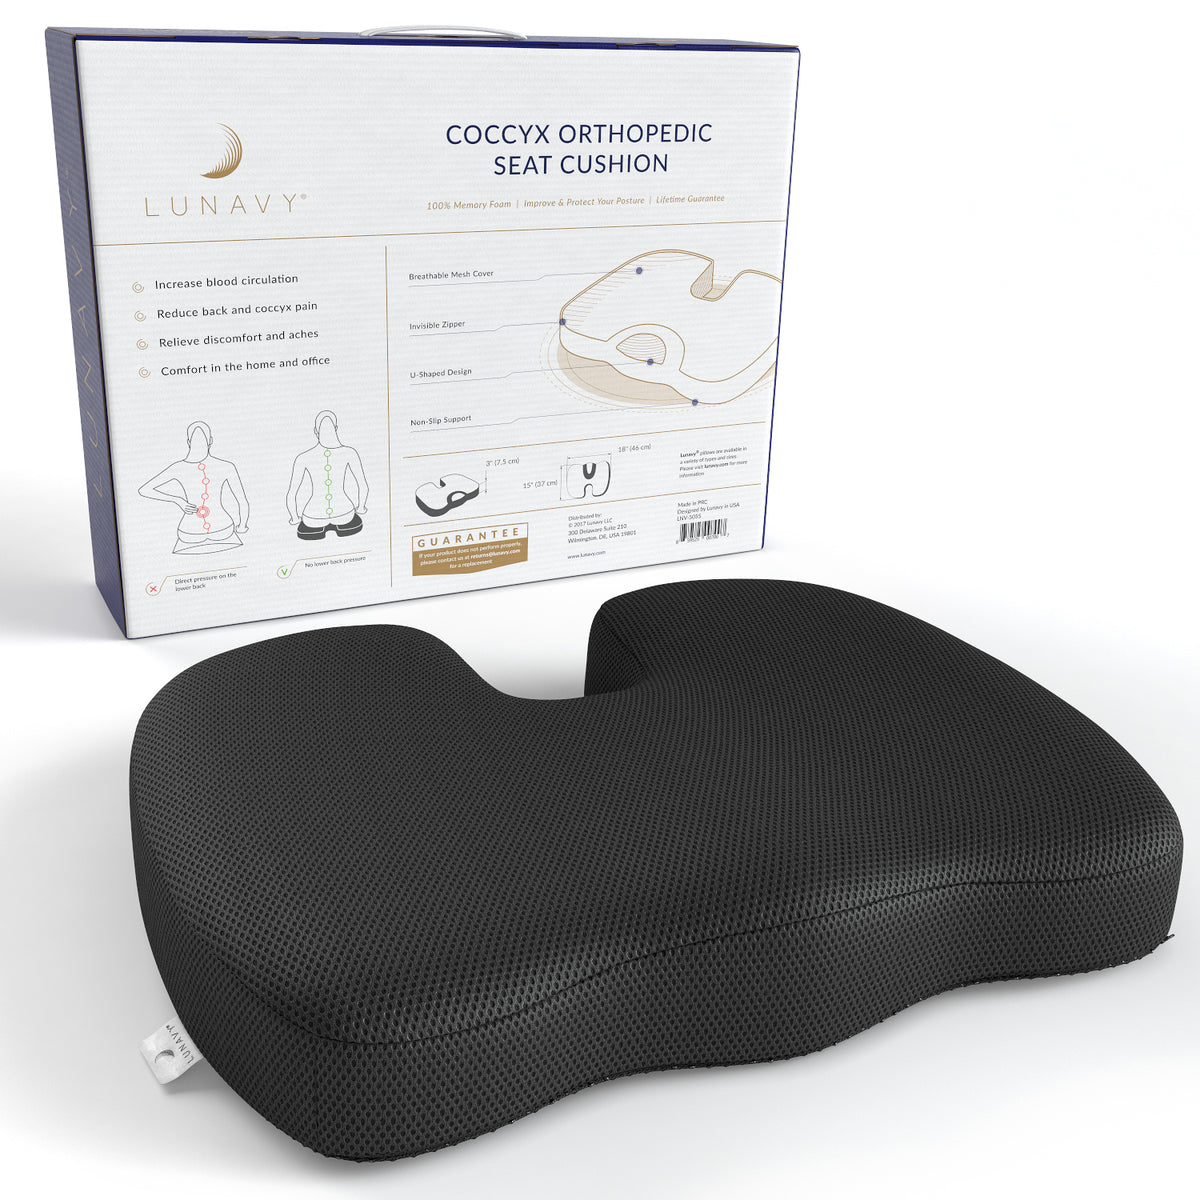 Coccyx Orthopedic Seat Cushion Lunavy Llc